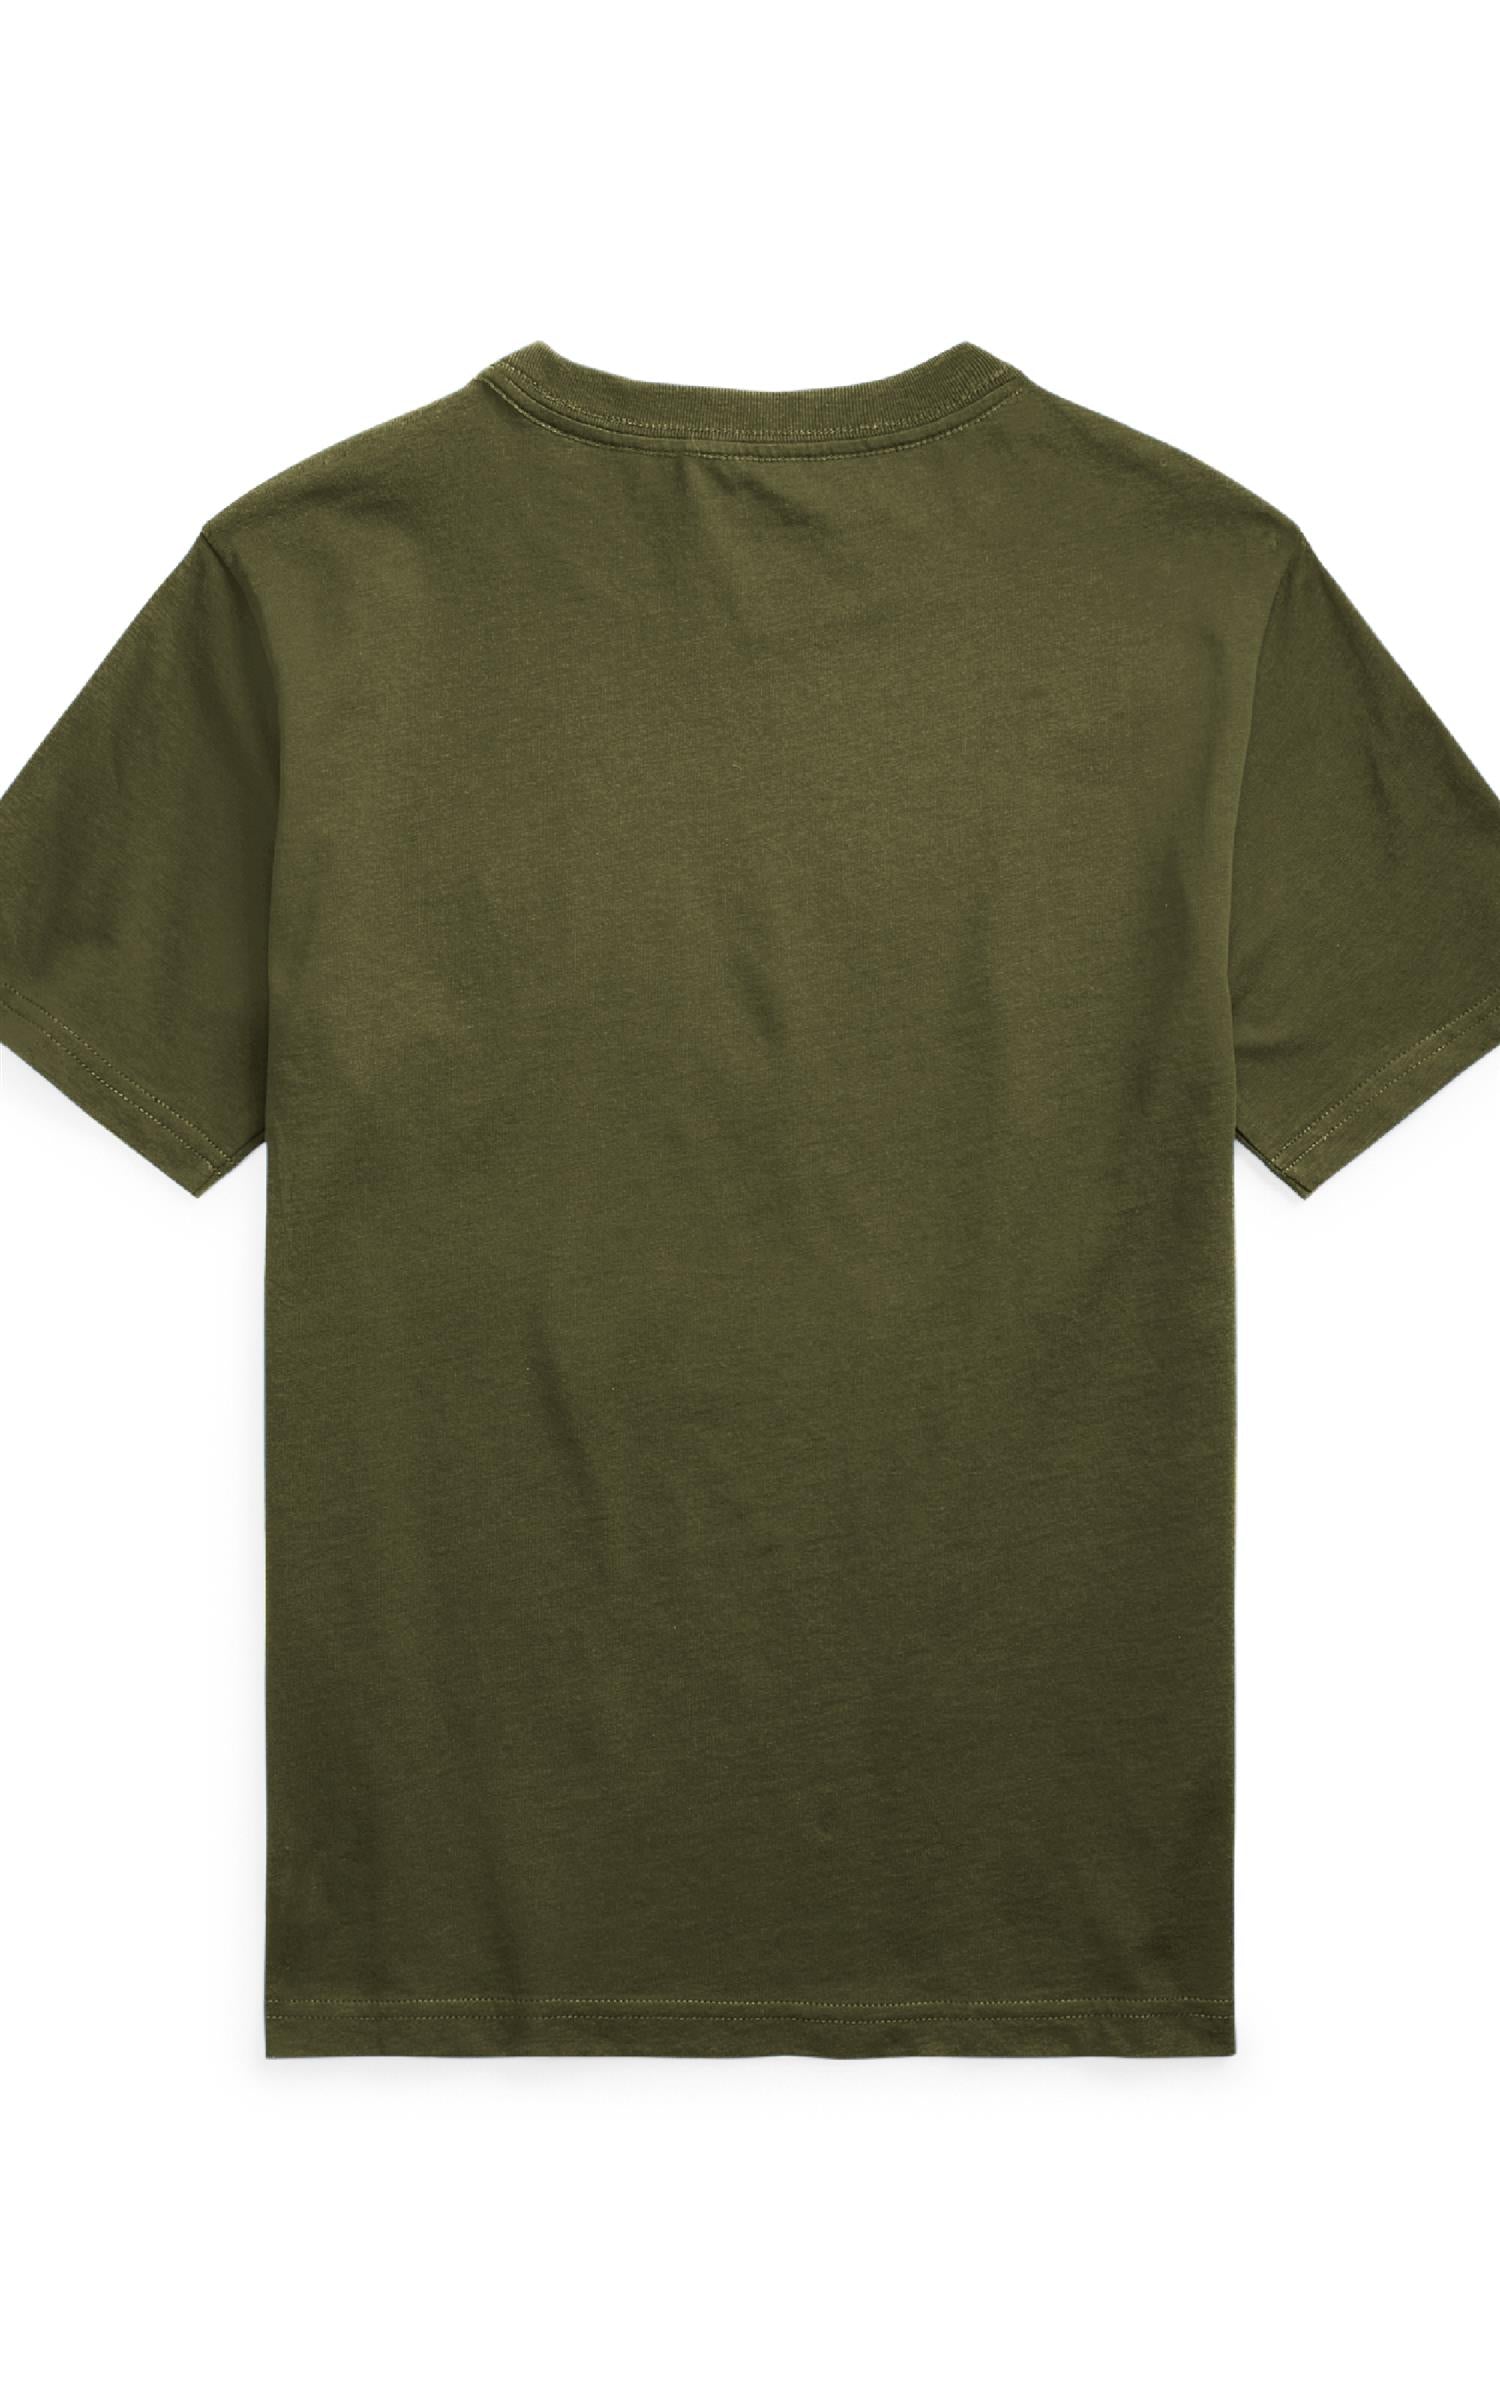 RALPH LAUREN 8-16År SS CN T-shirt,Teens Army